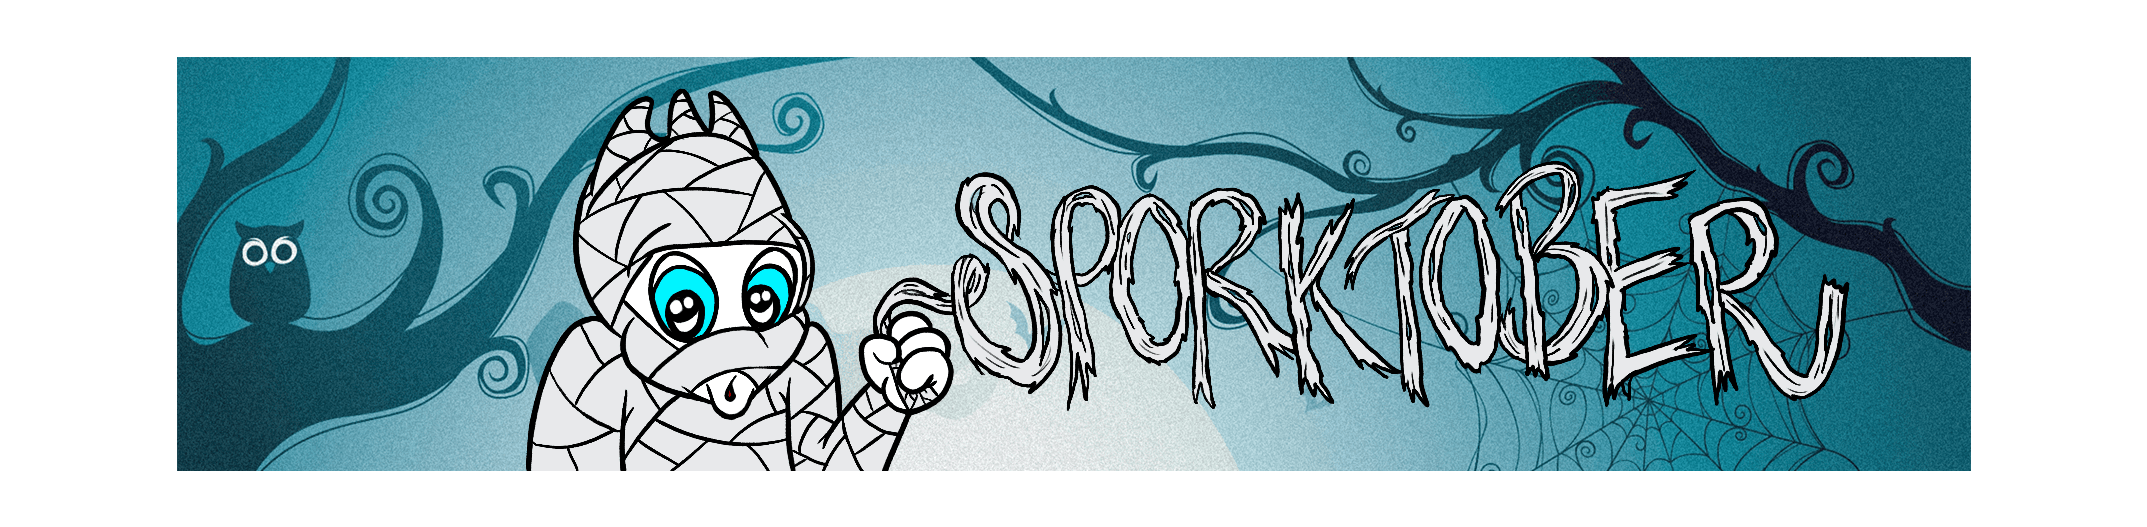 Sporky's Sporktober Creations!